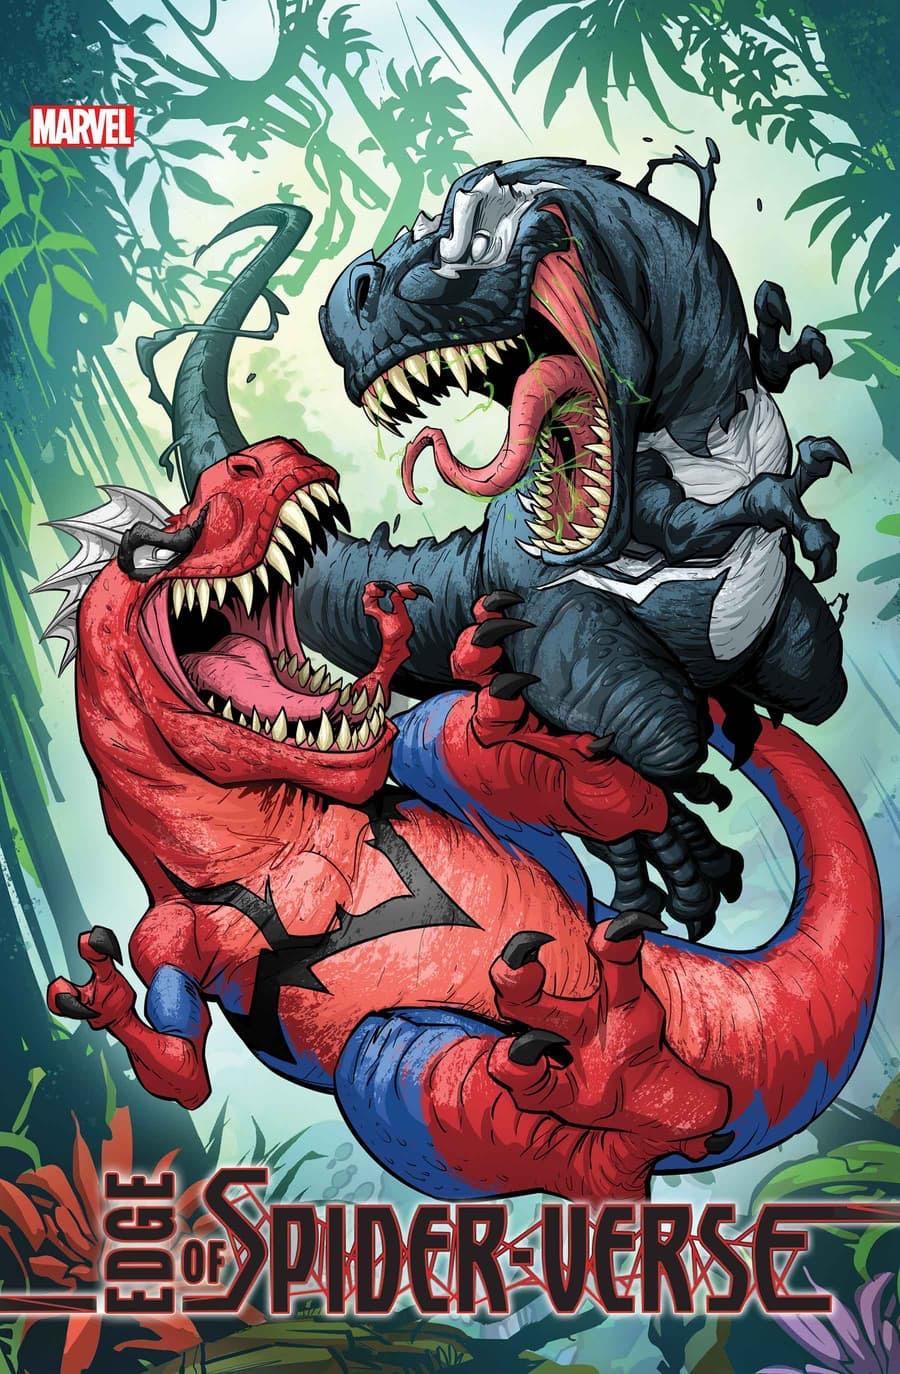 Marvel's Spider-Rex Returns to Battle Venomsaurus in Edge of Spider-Verse